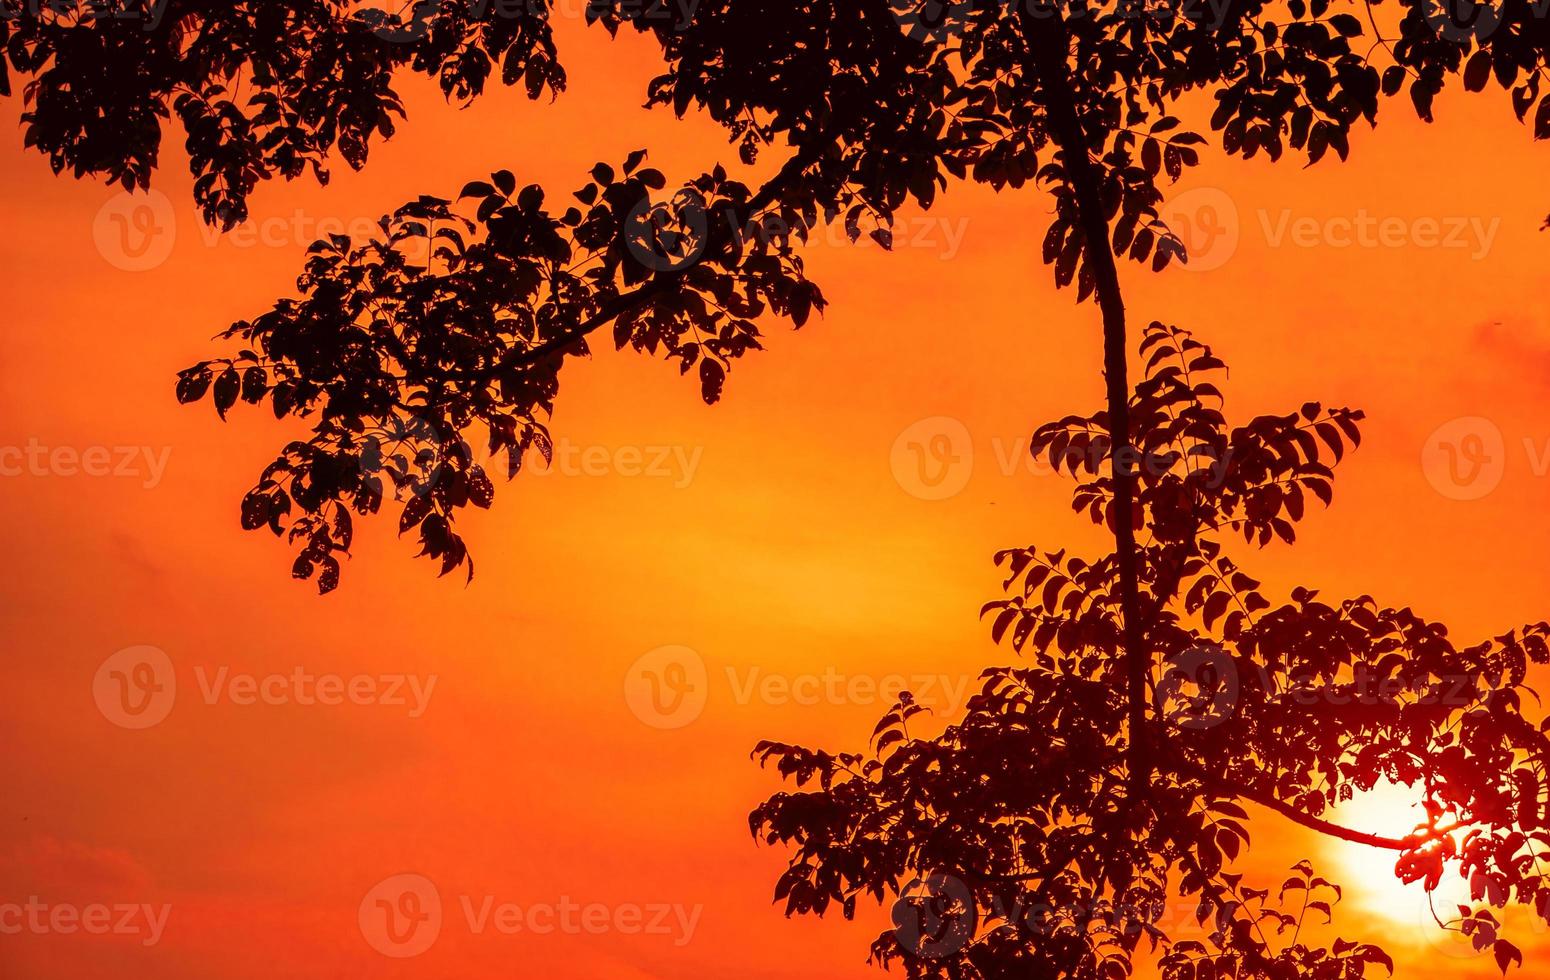 fondo de silueta de ramas de árbol con cielo de puesta de sol naranja foto